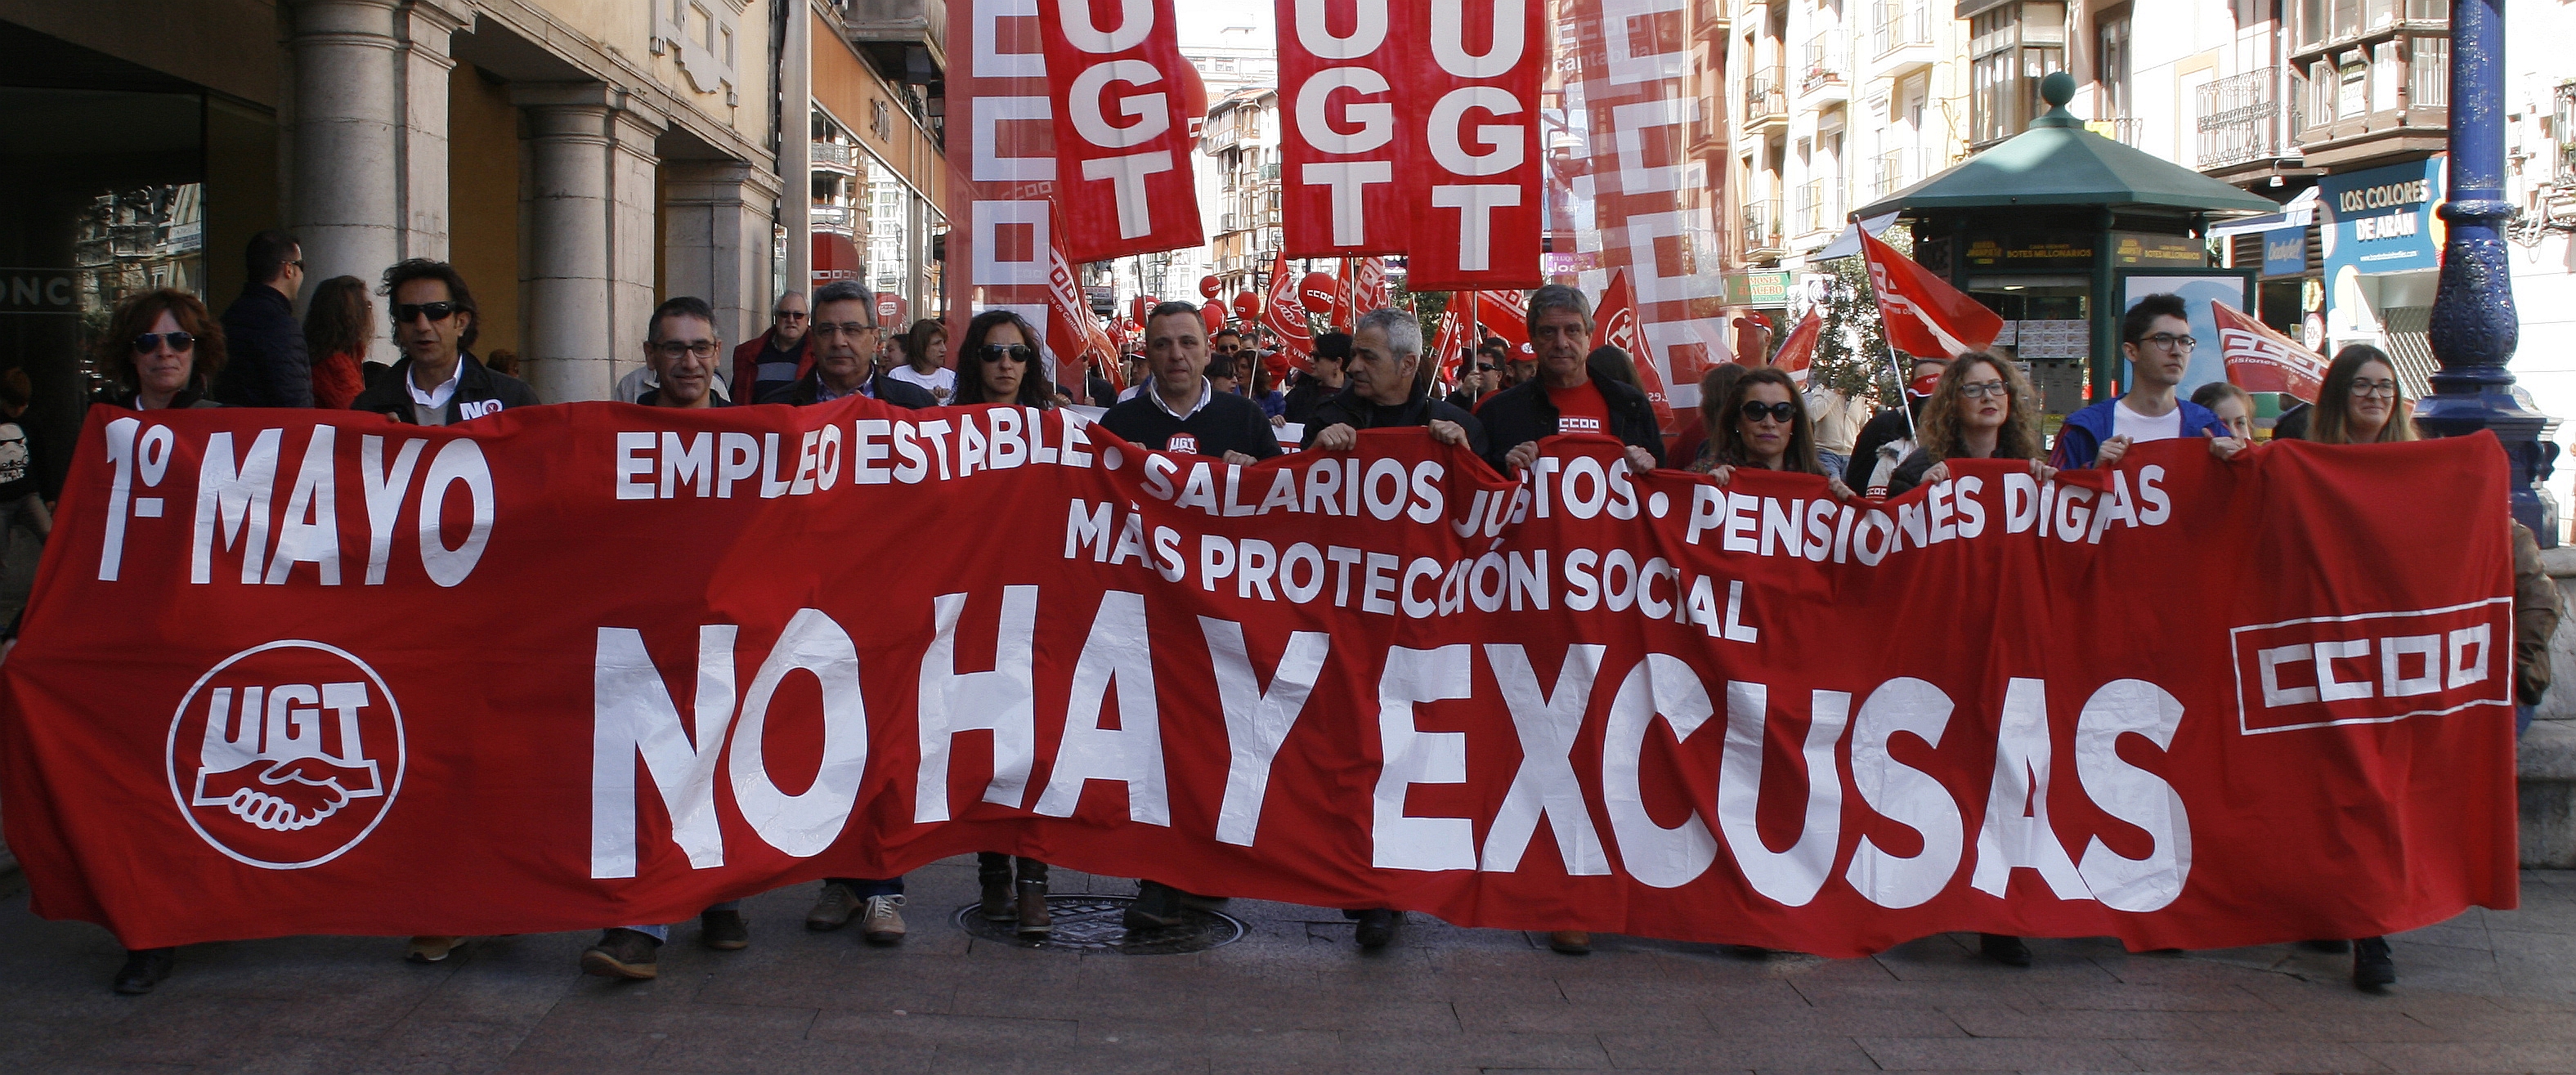 Manifestación del 1 de mayo en Santander (C) Archivo CANTABRIA DIARIO